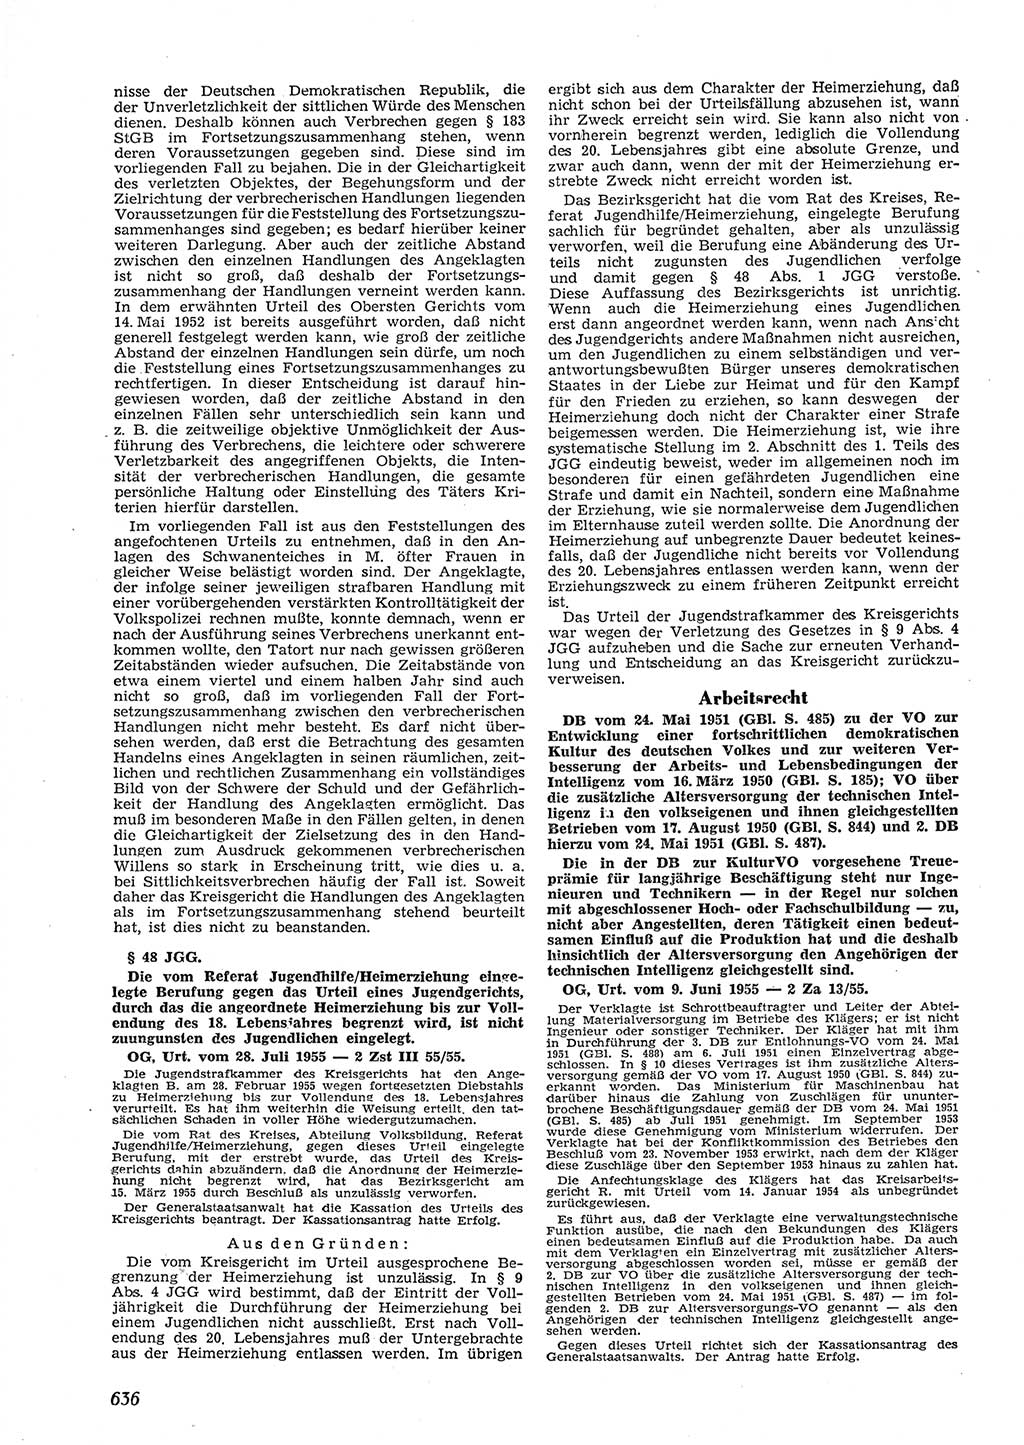 Neue Justiz (NJ), Zeitschrift für Recht und Rechtswissenschaft [Deutsche Demokratische Republik (DDR)], 9. Jahrgang 1955, Seite 636 (NJ DDR 1955, S. 636)